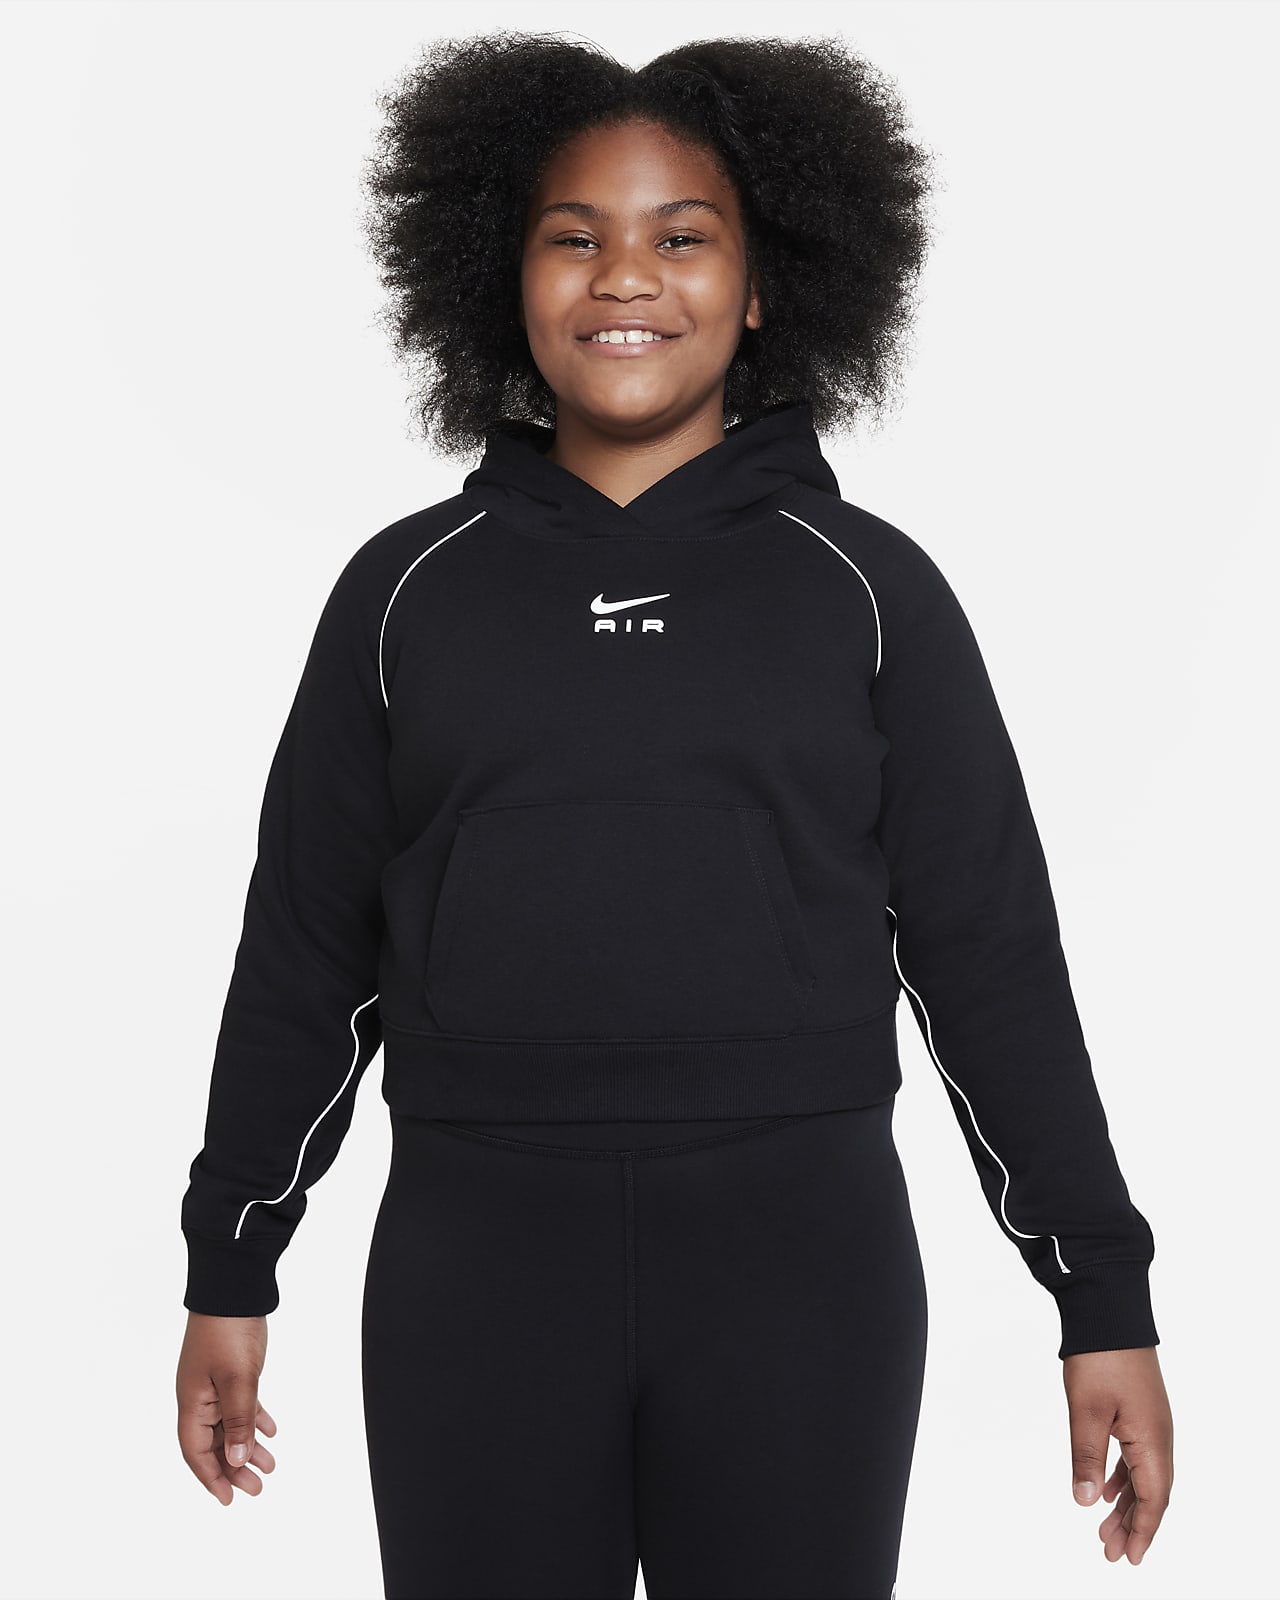 Sudadera con gorro de French Terry para niña talla grande (talla amplia) Nike Air. Nike.com